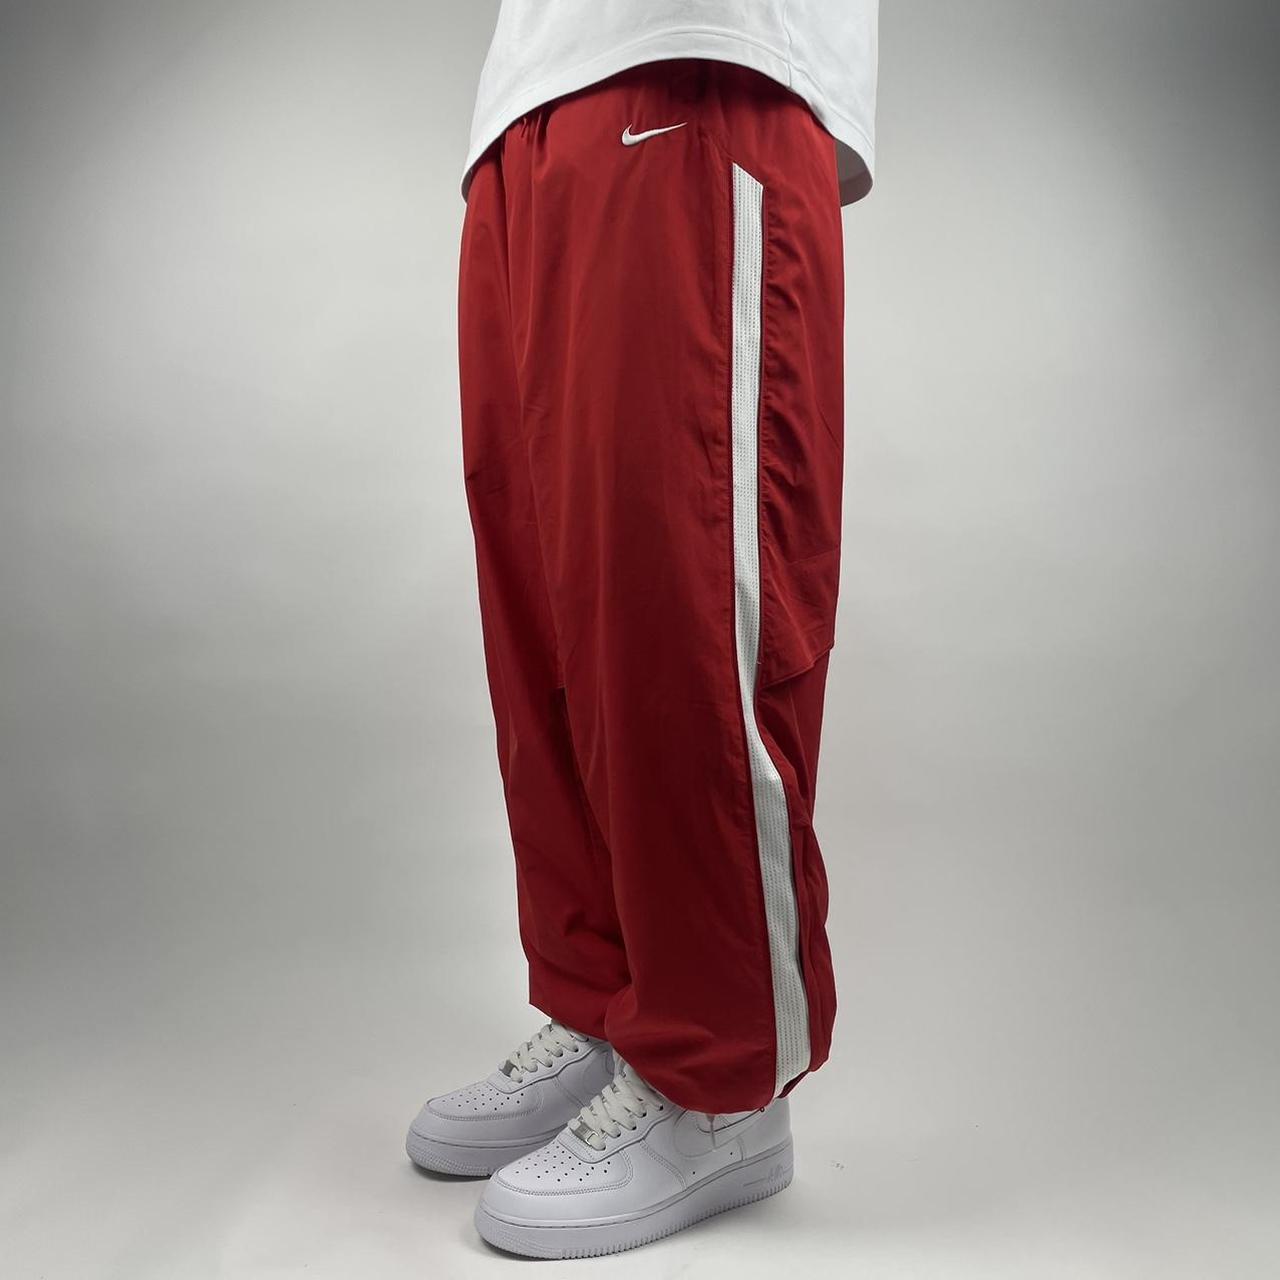 Y2k Nike track pants with side stripes model off - Depop